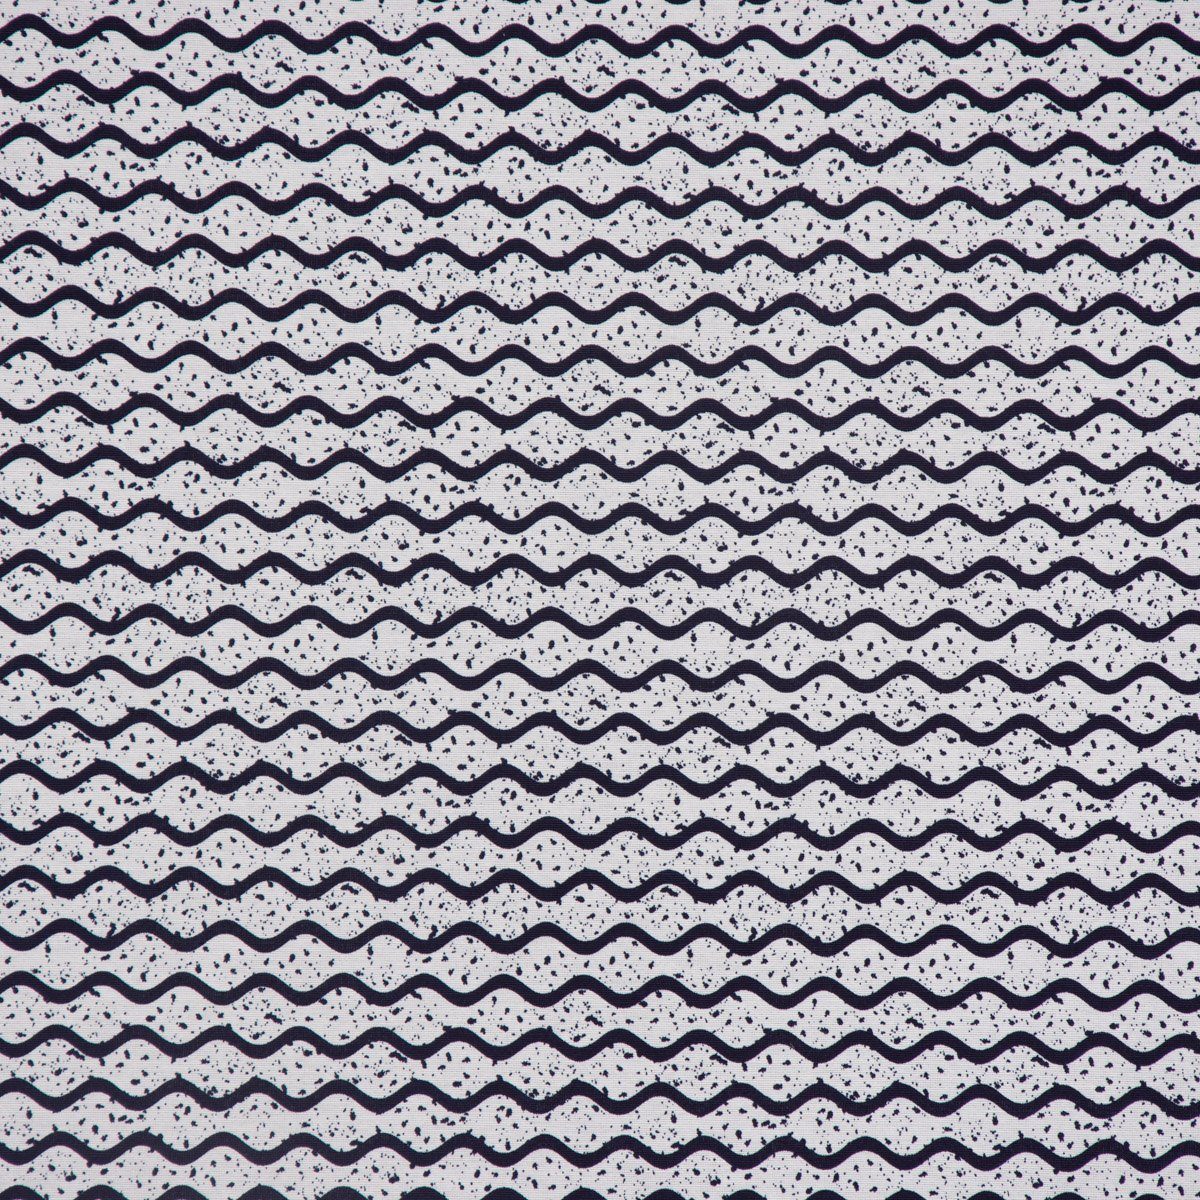 LEBEN. Tischläufer handmade dunkelblau Wellen Tischläufer 40x160cm, SCHÖNER LEBEN. Punkte weiß SCHÖNER